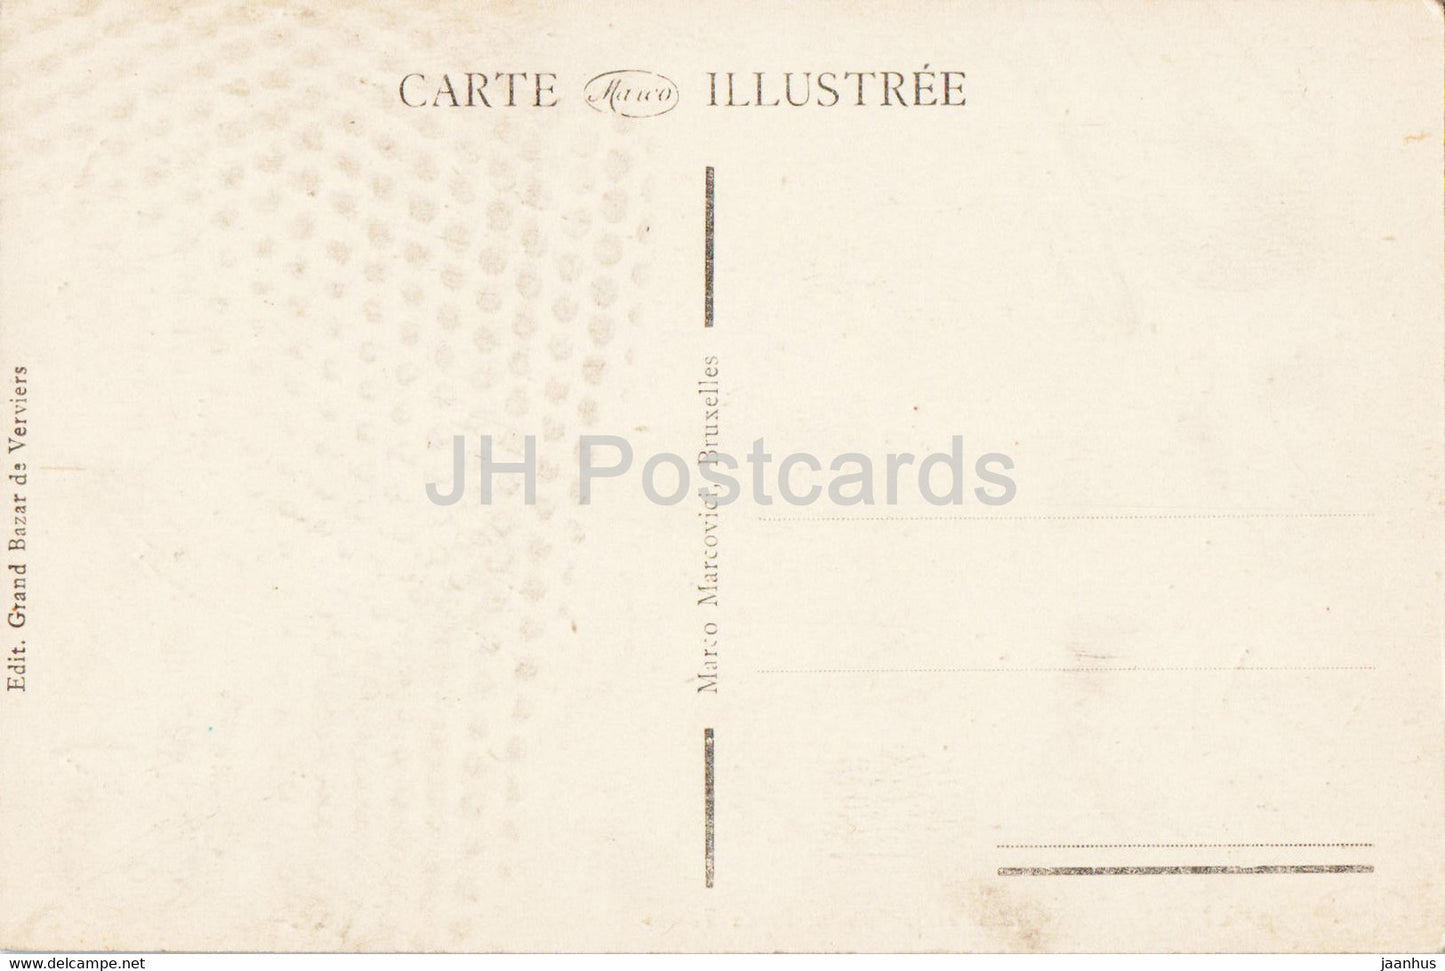 Verviers - Place et Monument Vieux Temps - 10 - old postcard - Belgium - unused